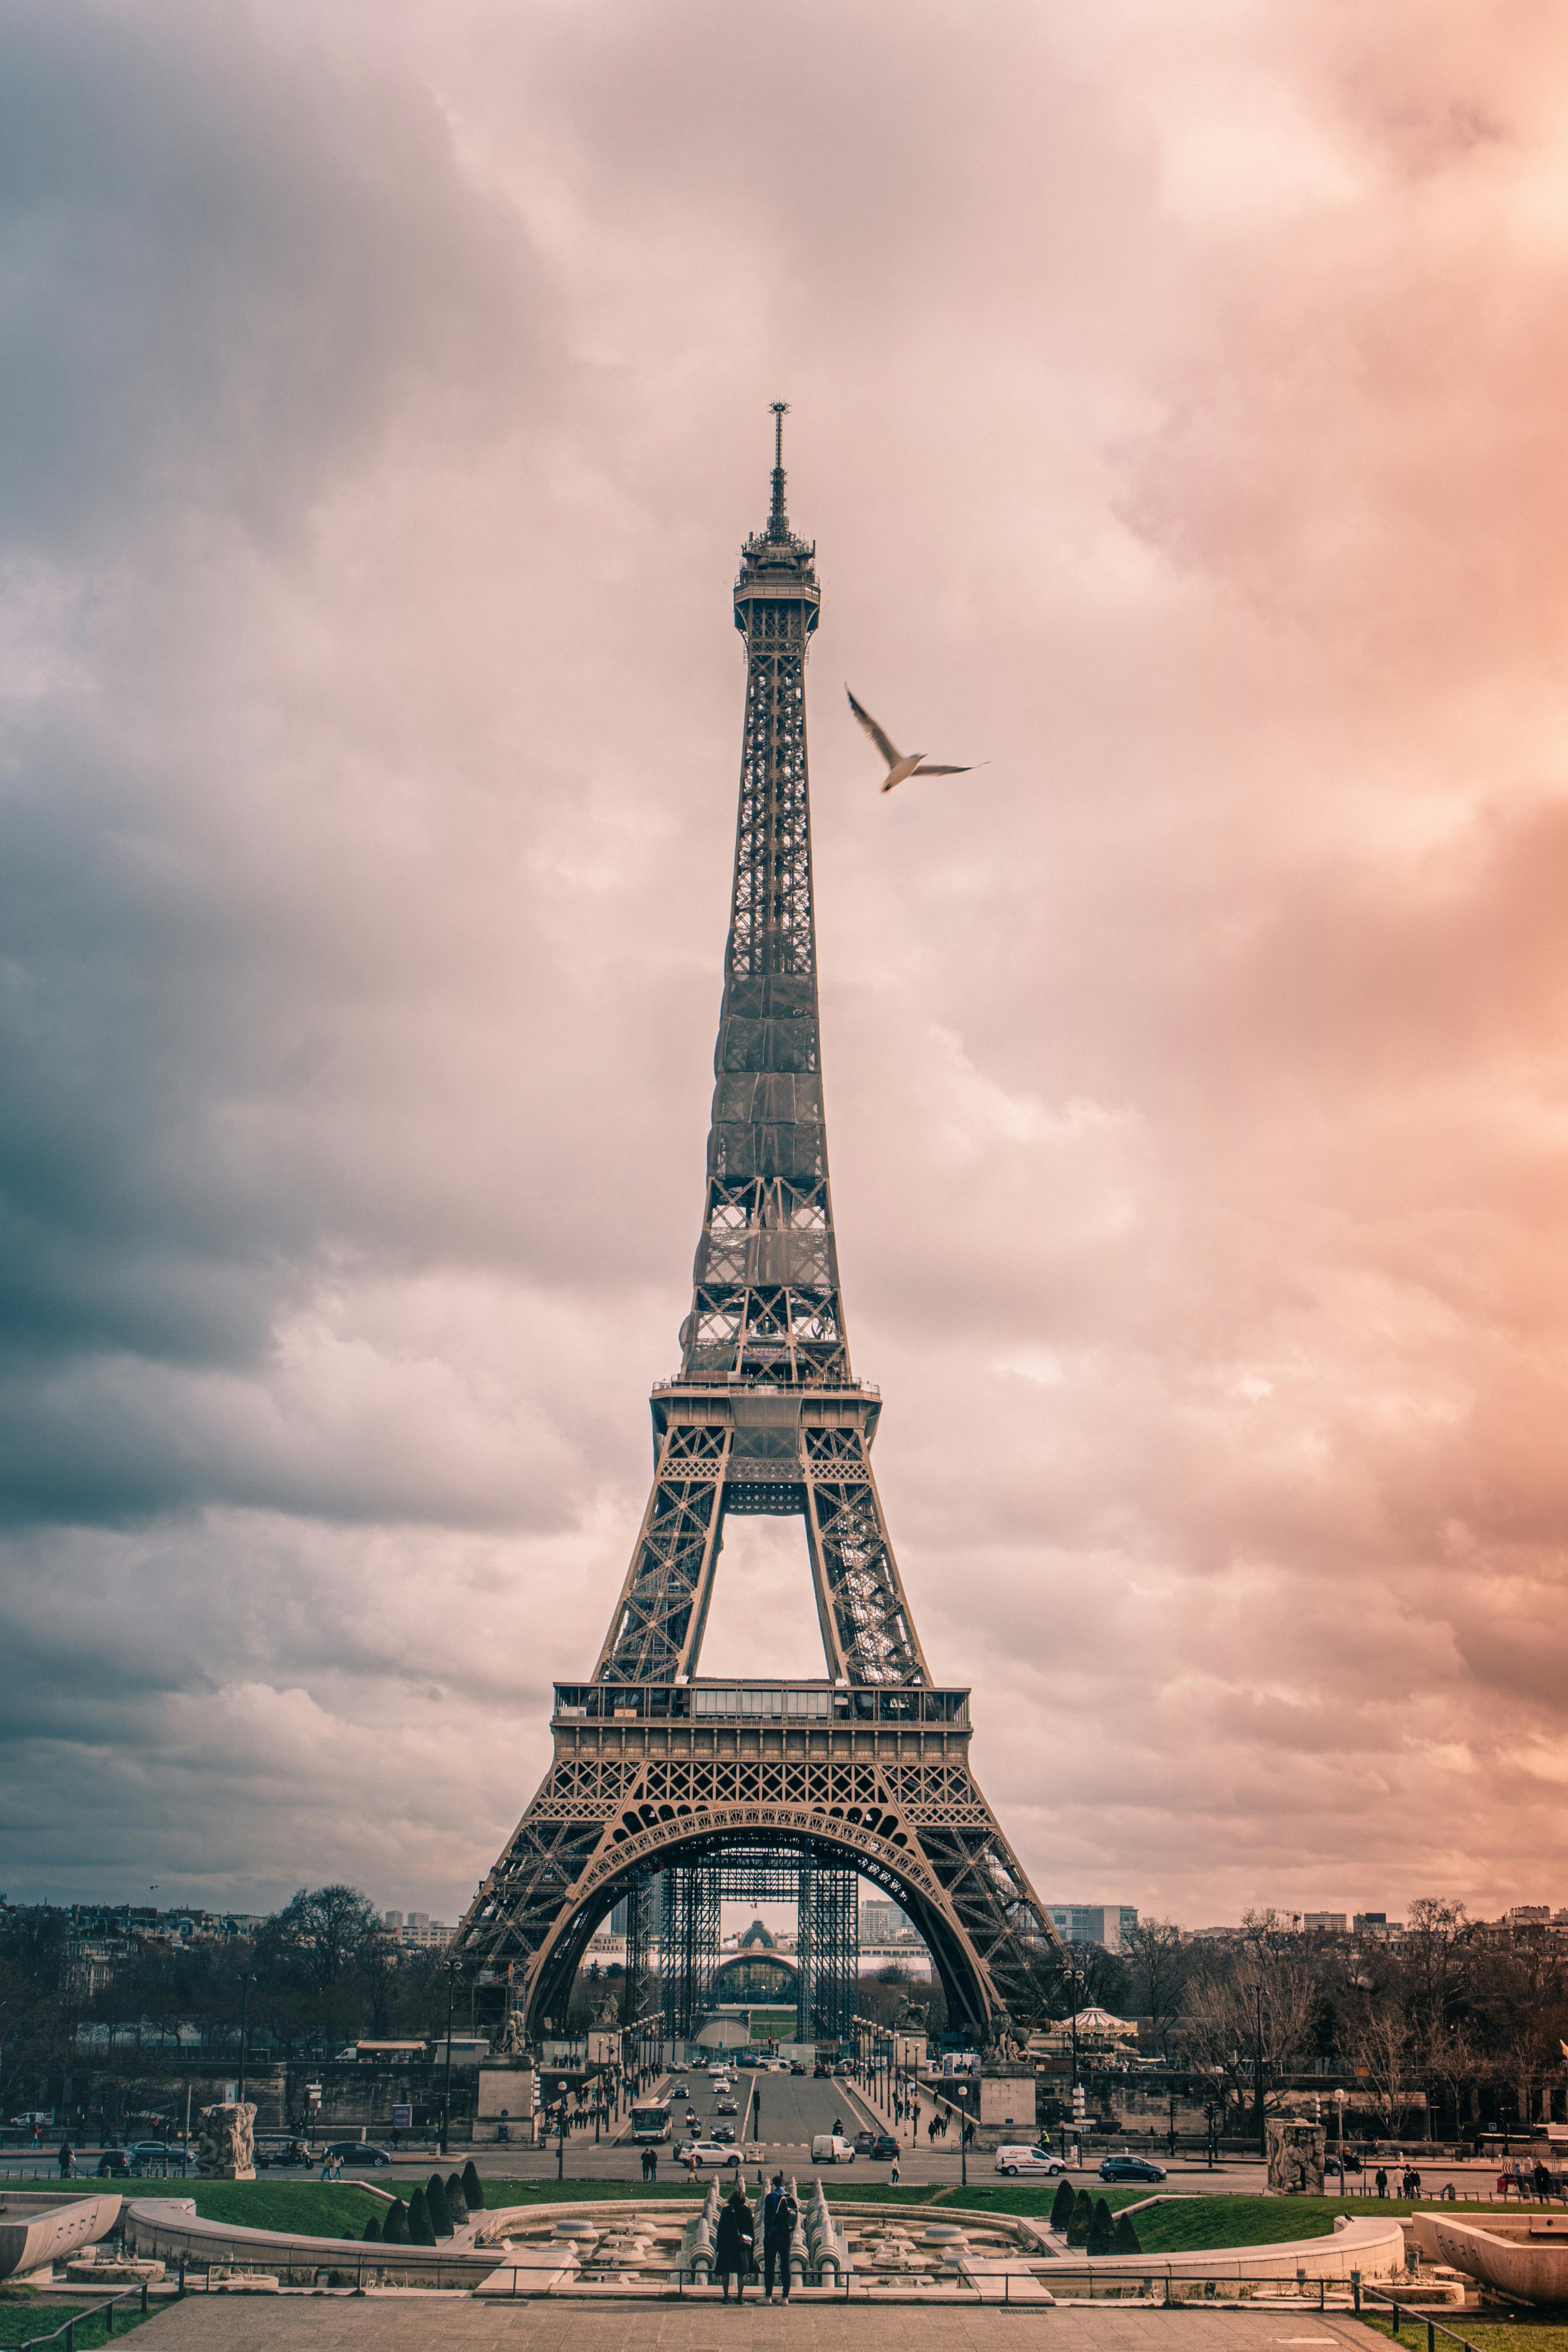 Bức ảnh liên quan đến The Eiffel Tower là một điểm đến tuyệt vời cho những ai yêu thích vẻ đẹp kiến trúc. Tháp Eiffel là một trong những công trình kiến ​​trúc đặc sắc nhất trên thế giới và là niềm tự hào của Paris. Hãy xem bức ảnh và khám phá những góc cạnh độc đáo của nó.